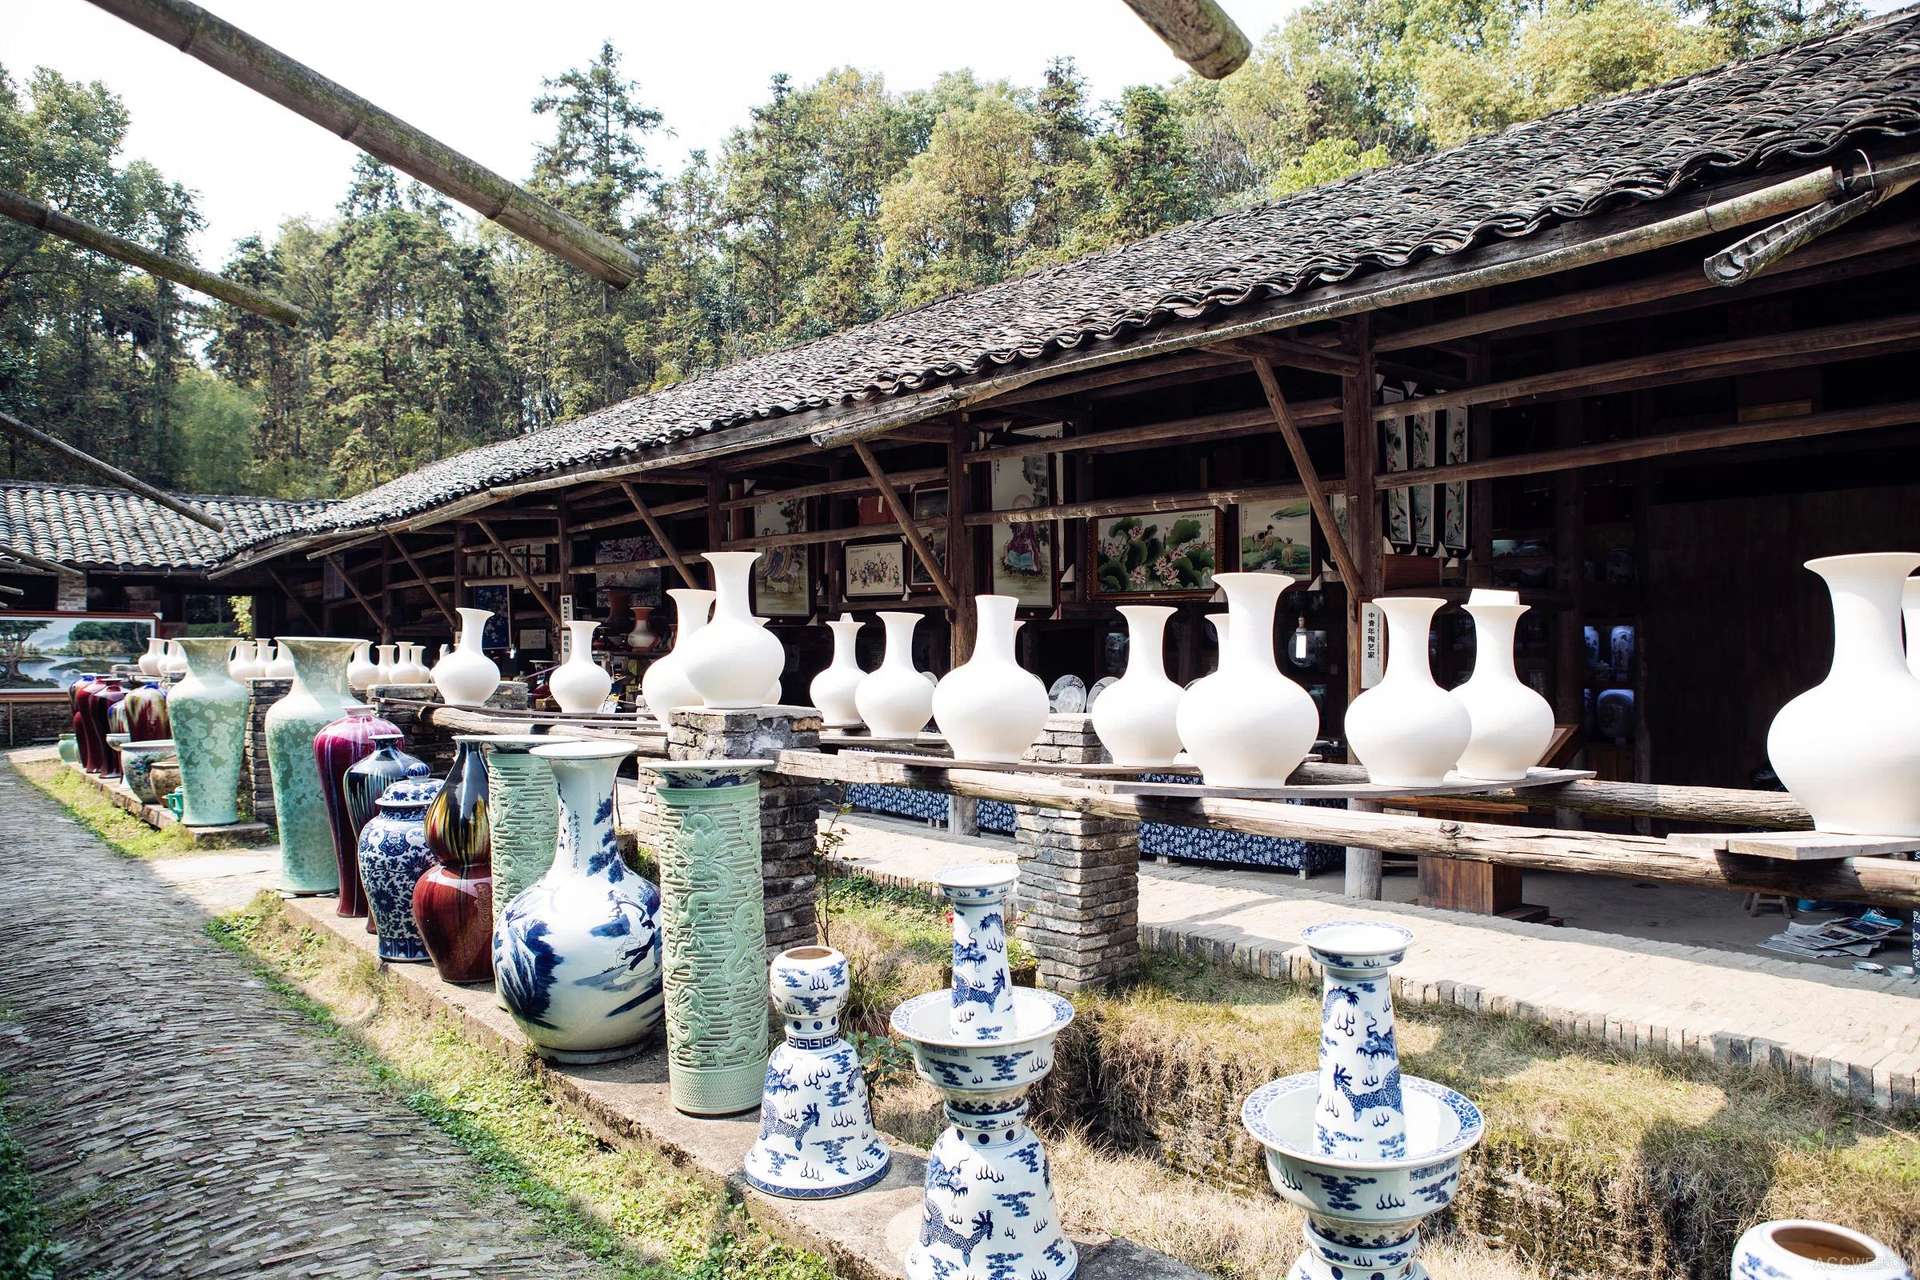 江西景德镇:看民窑博物馆,古镇流水,瓷器市场